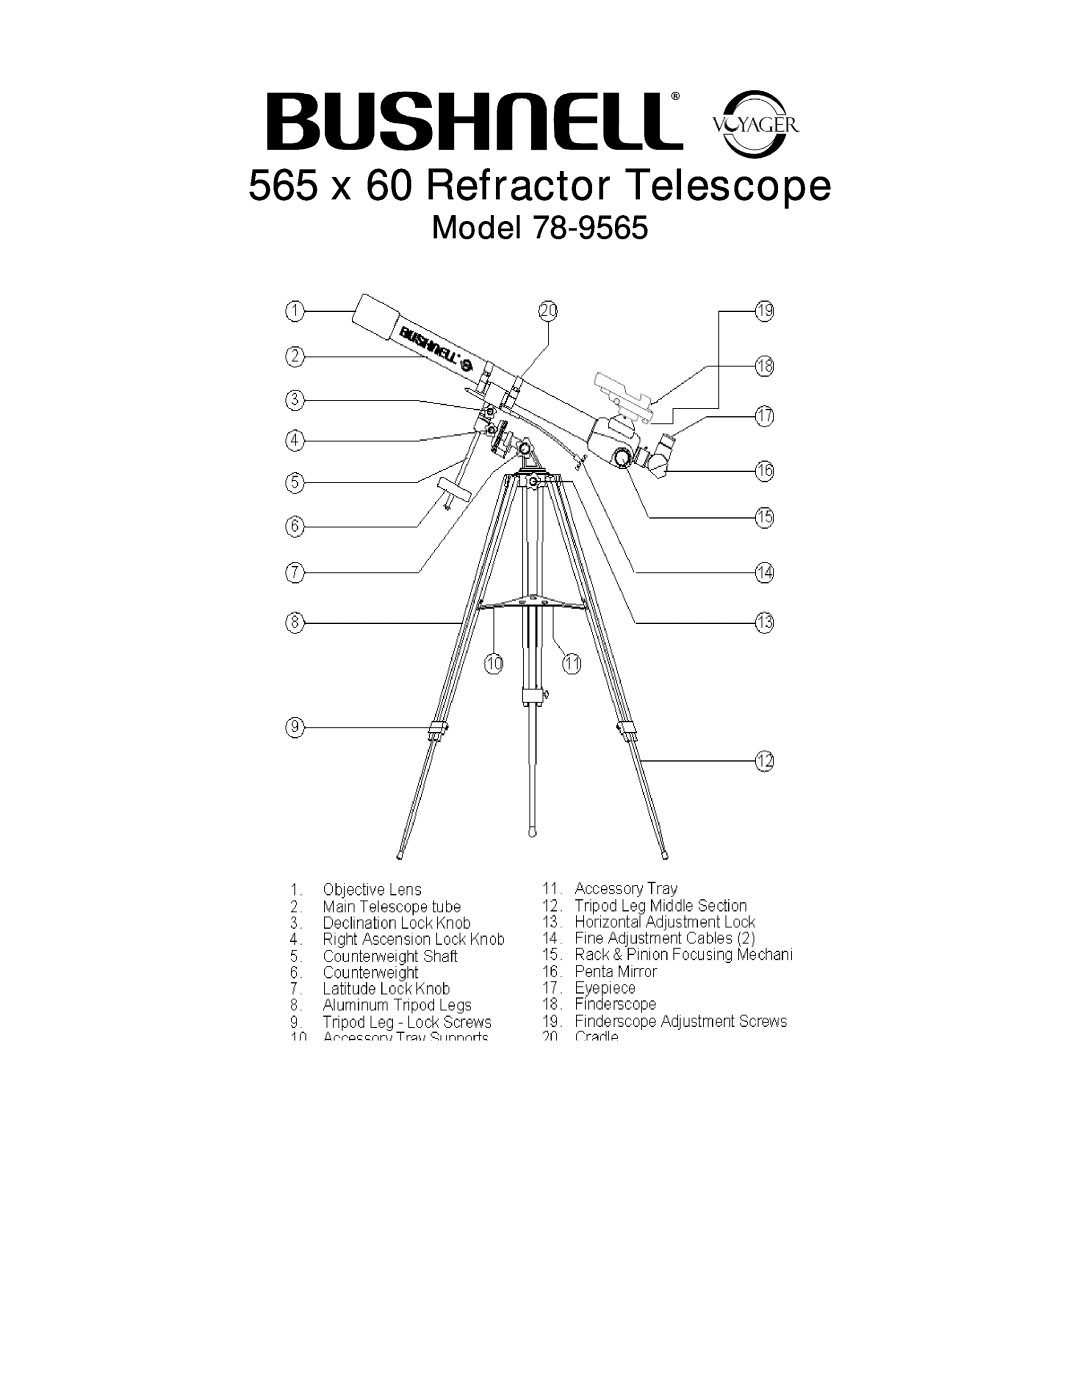 Bushnell 78.9565 manual Model, 565 x 60 Refractor Telescope 